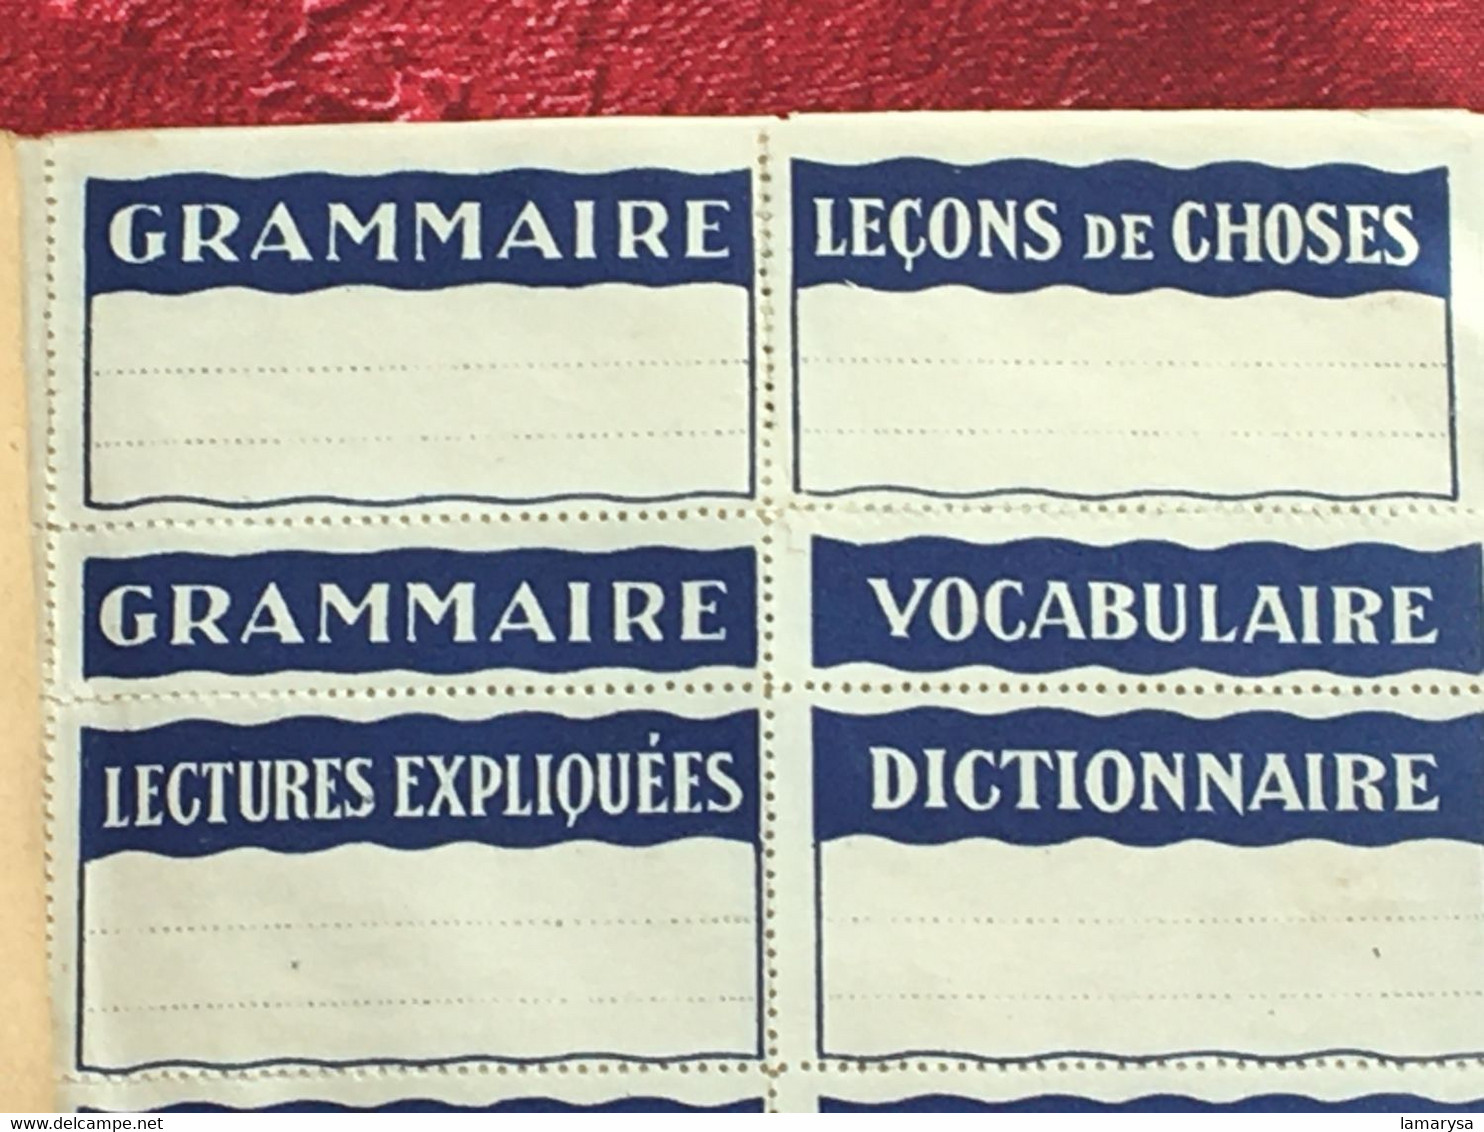 Vintage-☛ Étiquettes pour Cahiers et livres d'études-Carnet Titres les plus courants & passe partout. ouvrage spécial